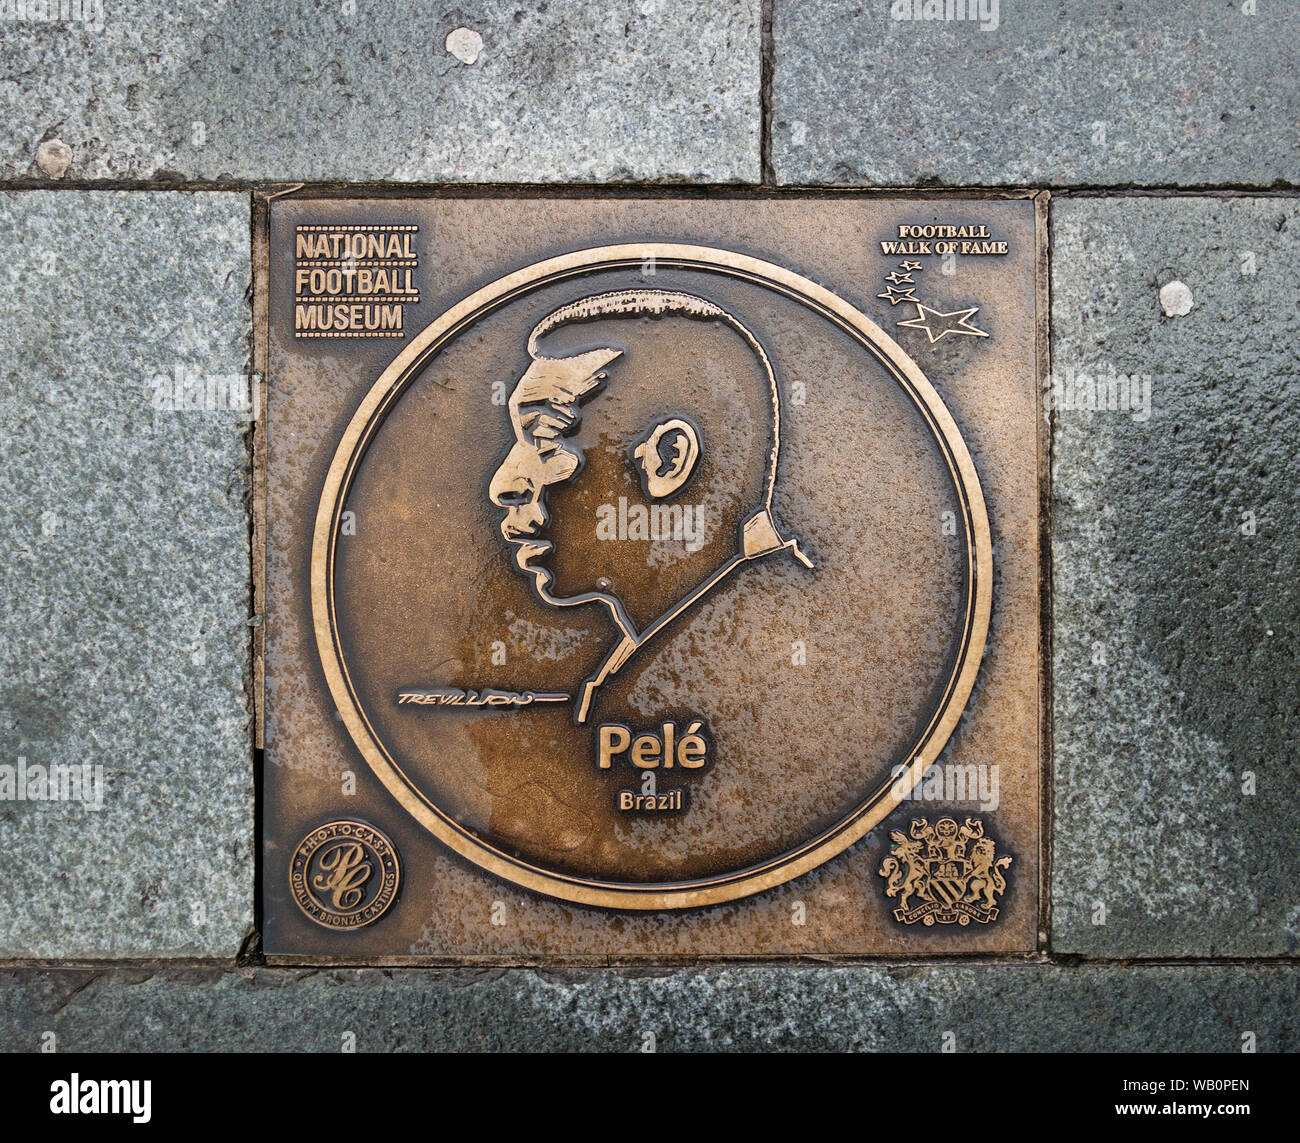 Placa de bronce del futbolista brasileño Pelé en el paseo de la fama de fútbol en el museo nacional de fútbol en Manchester, Inglaterra Foto de stock